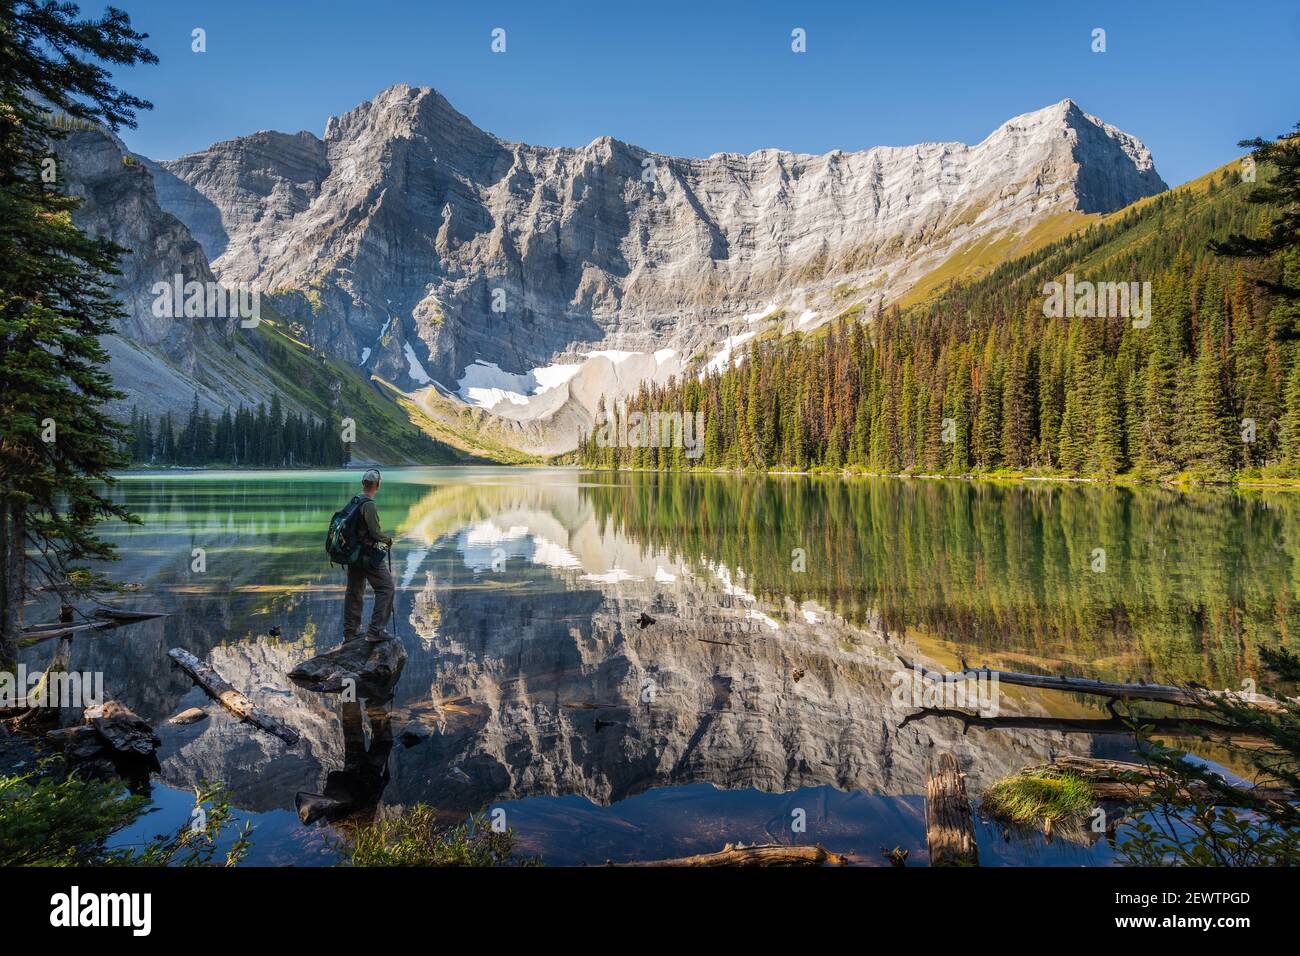 Hiker looking at view at Rawson Lake in Kananaskis Country, Alberta, Canada. Stock Photo